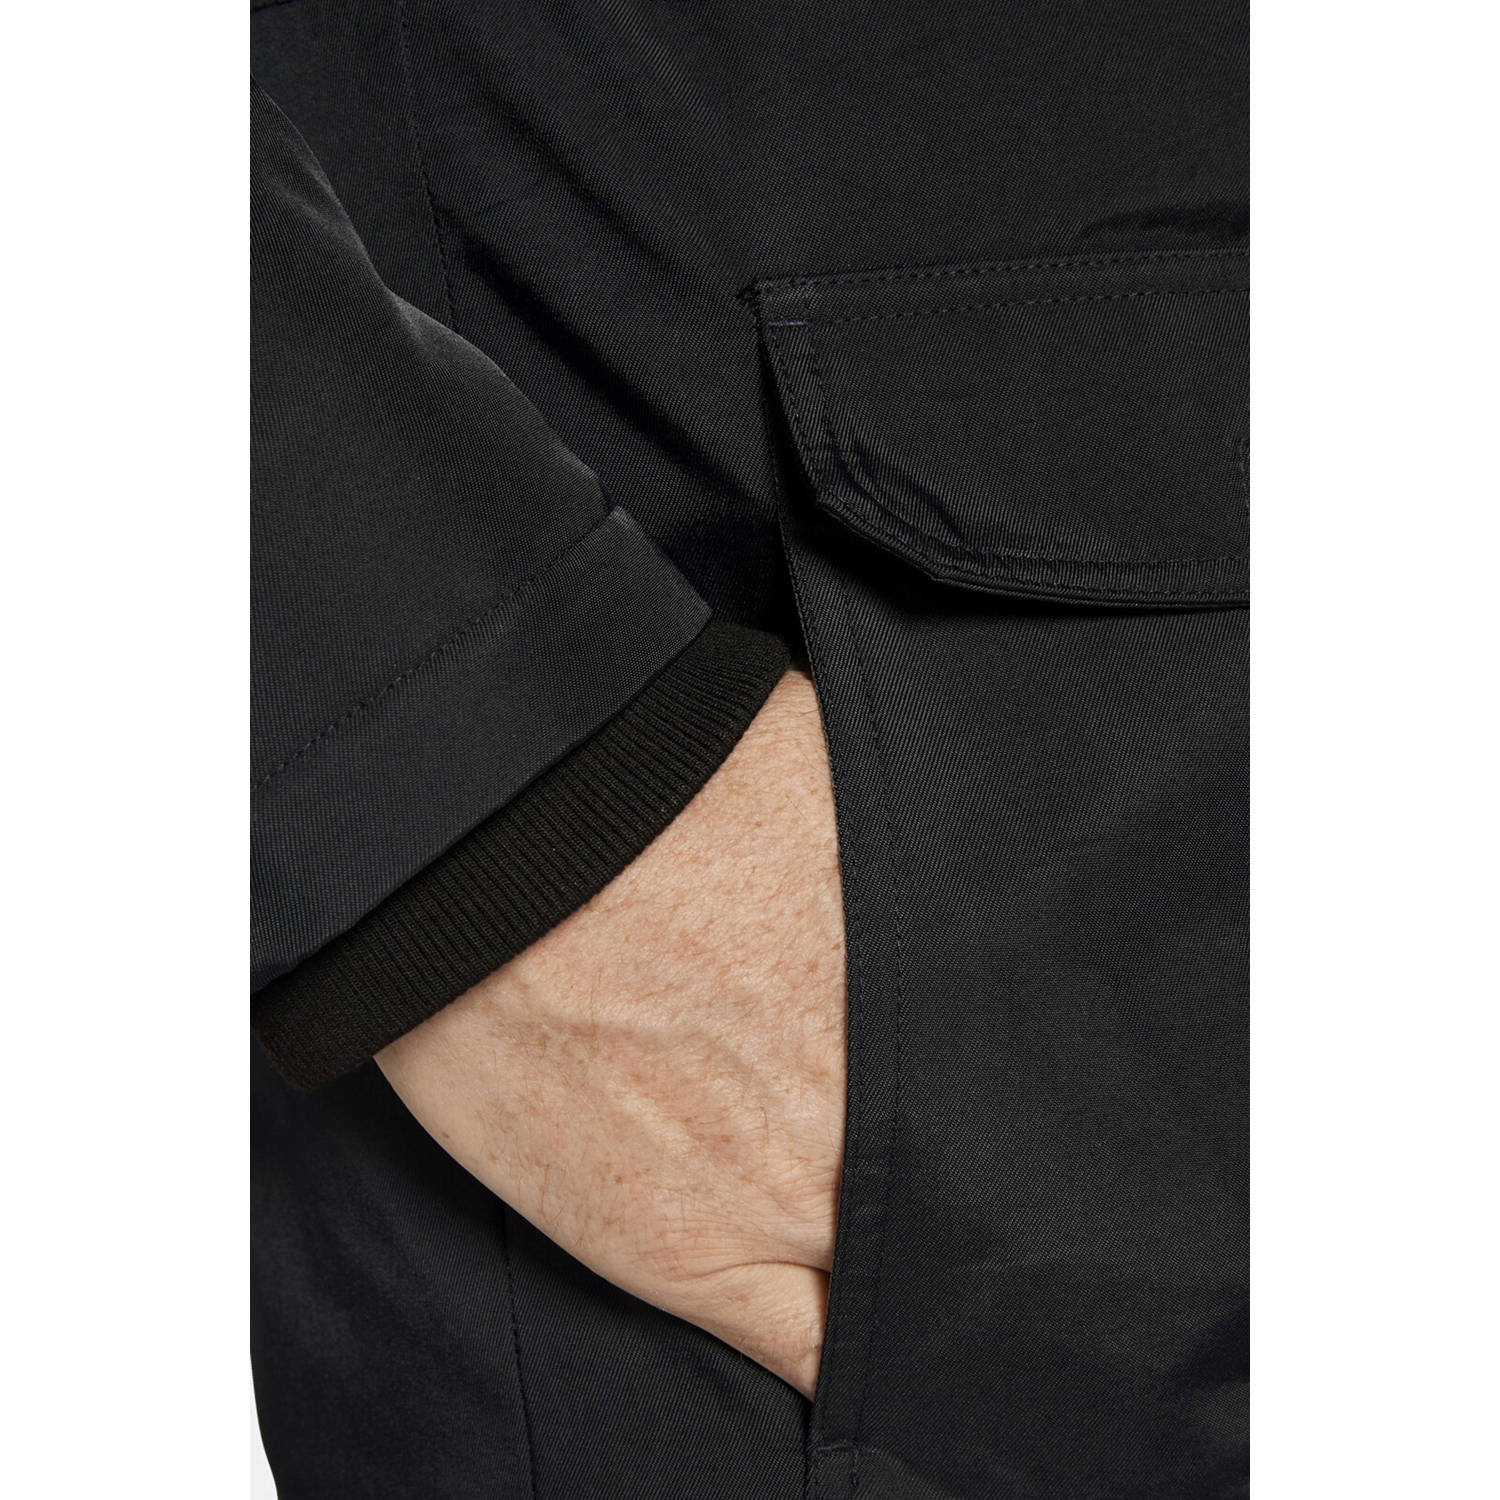 Jan Vanderstorm gewatteerde jas REIMAR Plus Size met printopdruk zwart